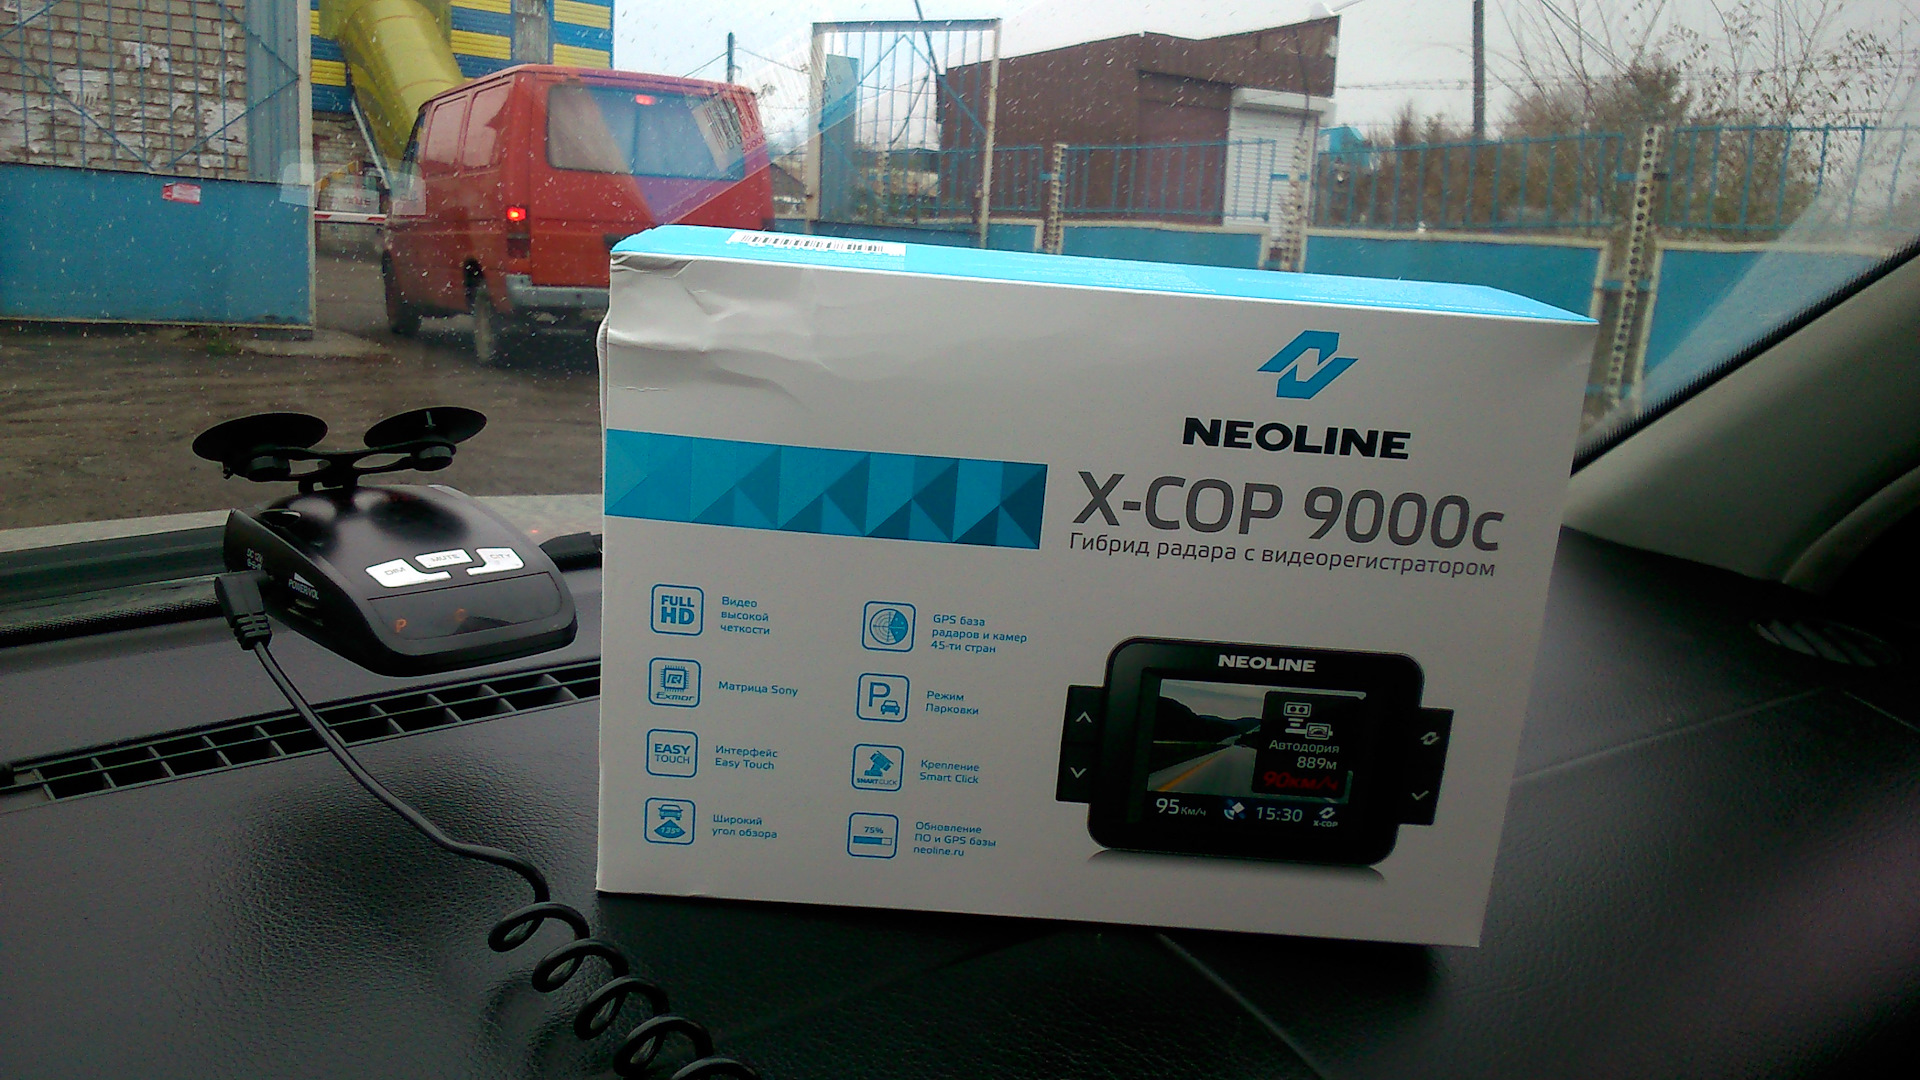 Регистратор neoline x cop. Neoline 9000c. Регистратор Неолайн 9000. Neoline x-cop 9000. Neoline x-cop 9000c.